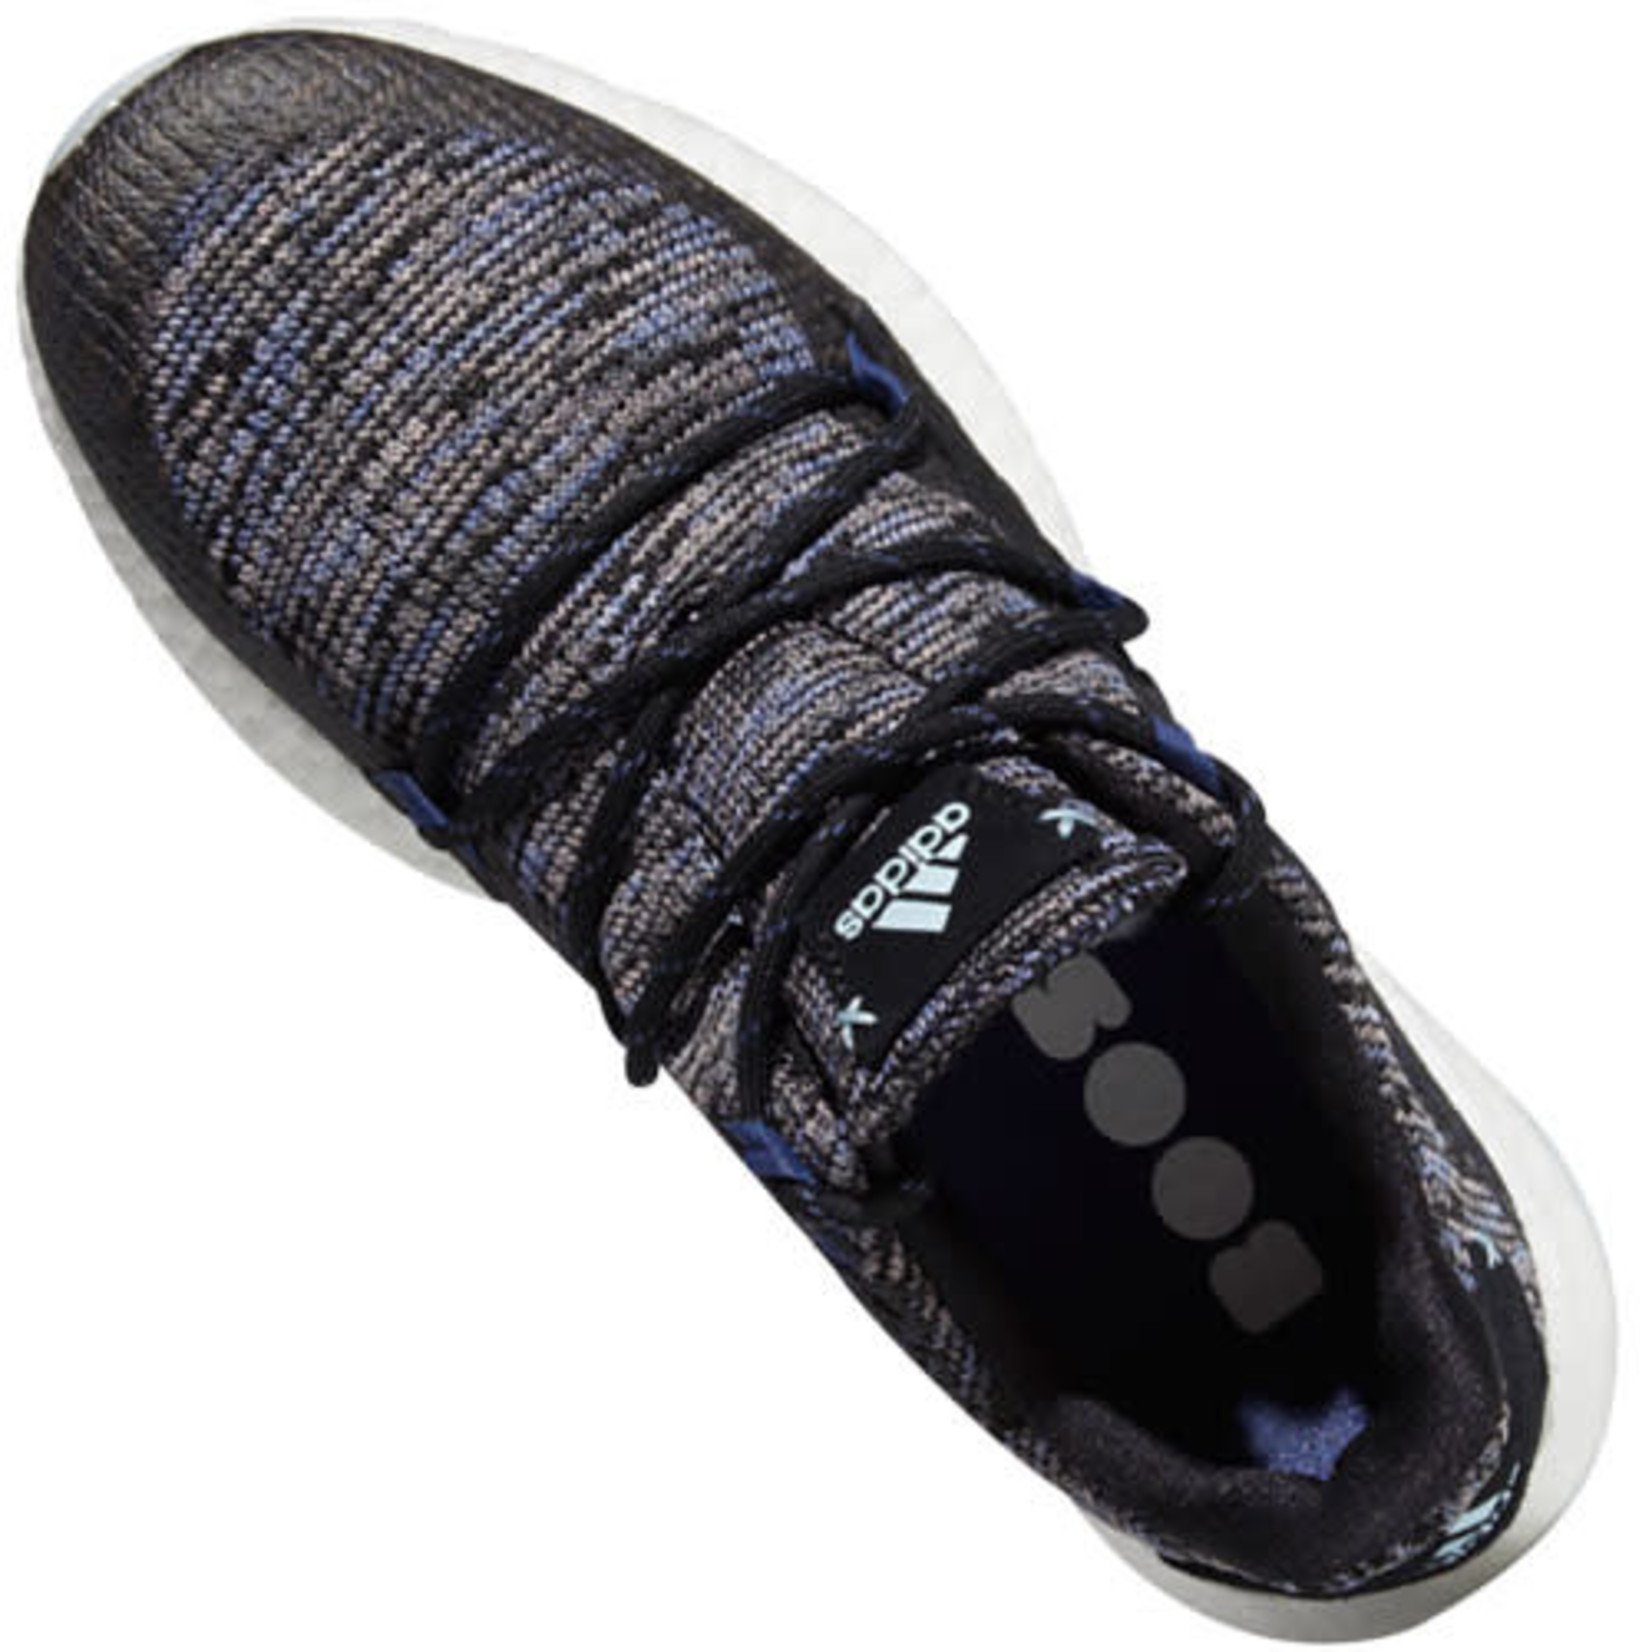 Adidas Women's Adidas Crossknit DPR Spikeless Golf Shoe Grey